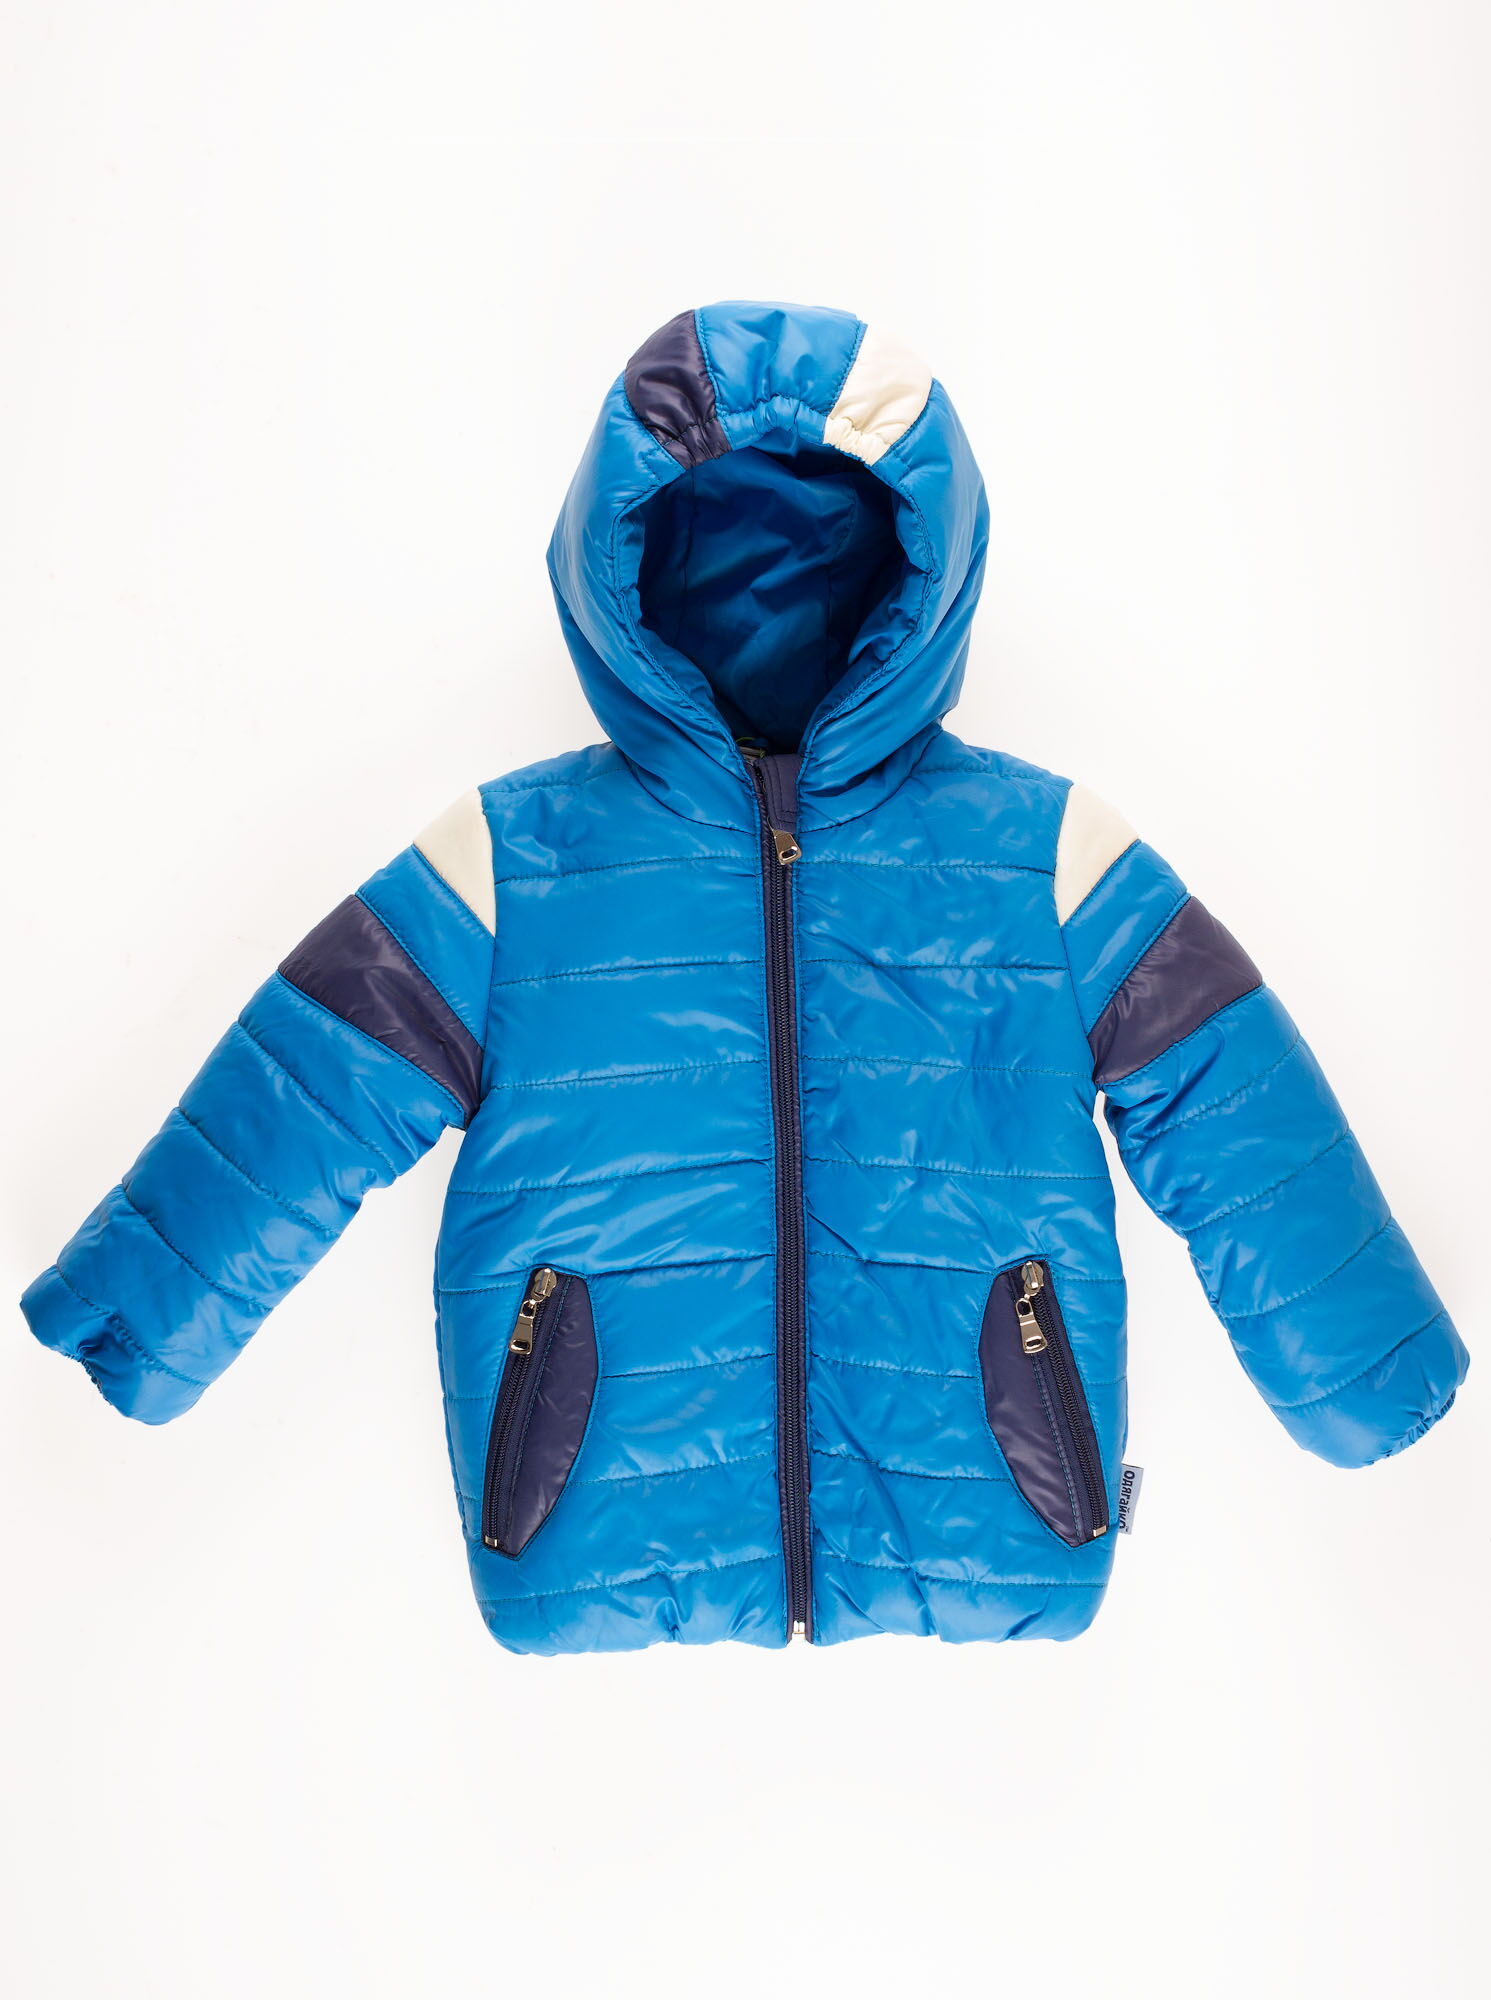 Комбинезон зимний (куртка+штаны) для мальчика Одягайко голубой 2820/01221 - купить